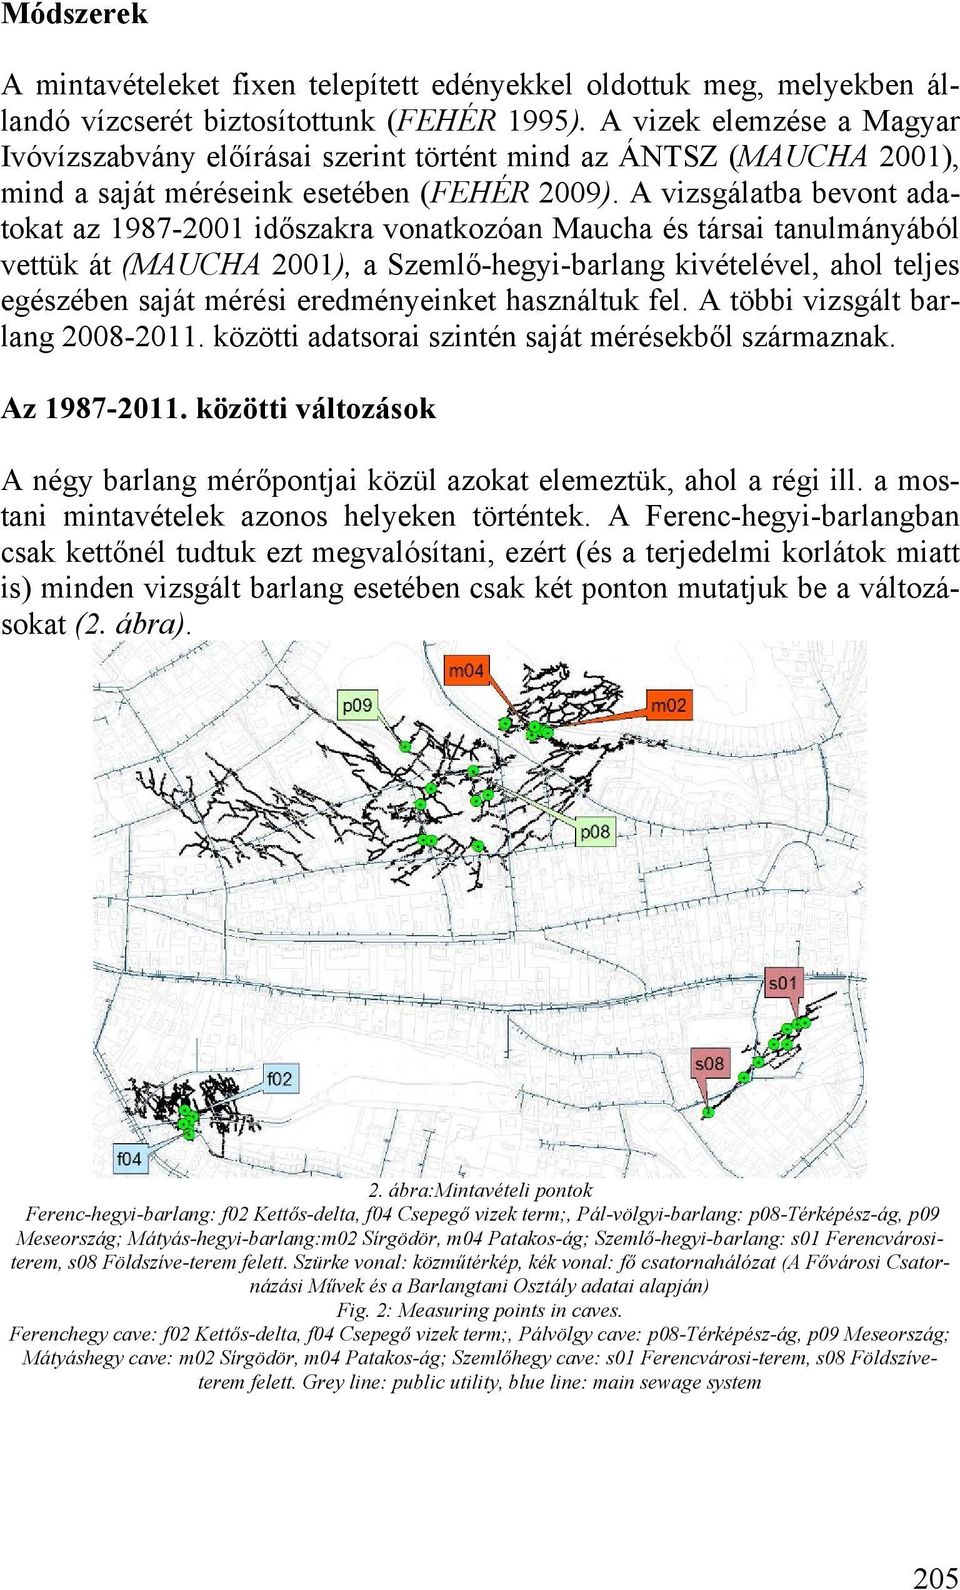 A vizsgálatba bevont adatokat az 1987-2001 időszakra vonatkozóan Maucha és társai tanulmányából vettük át (MAUCHA 2001), a Szemlő-hegyi-barlang kivételével, ahol teljes egészében saját mérési